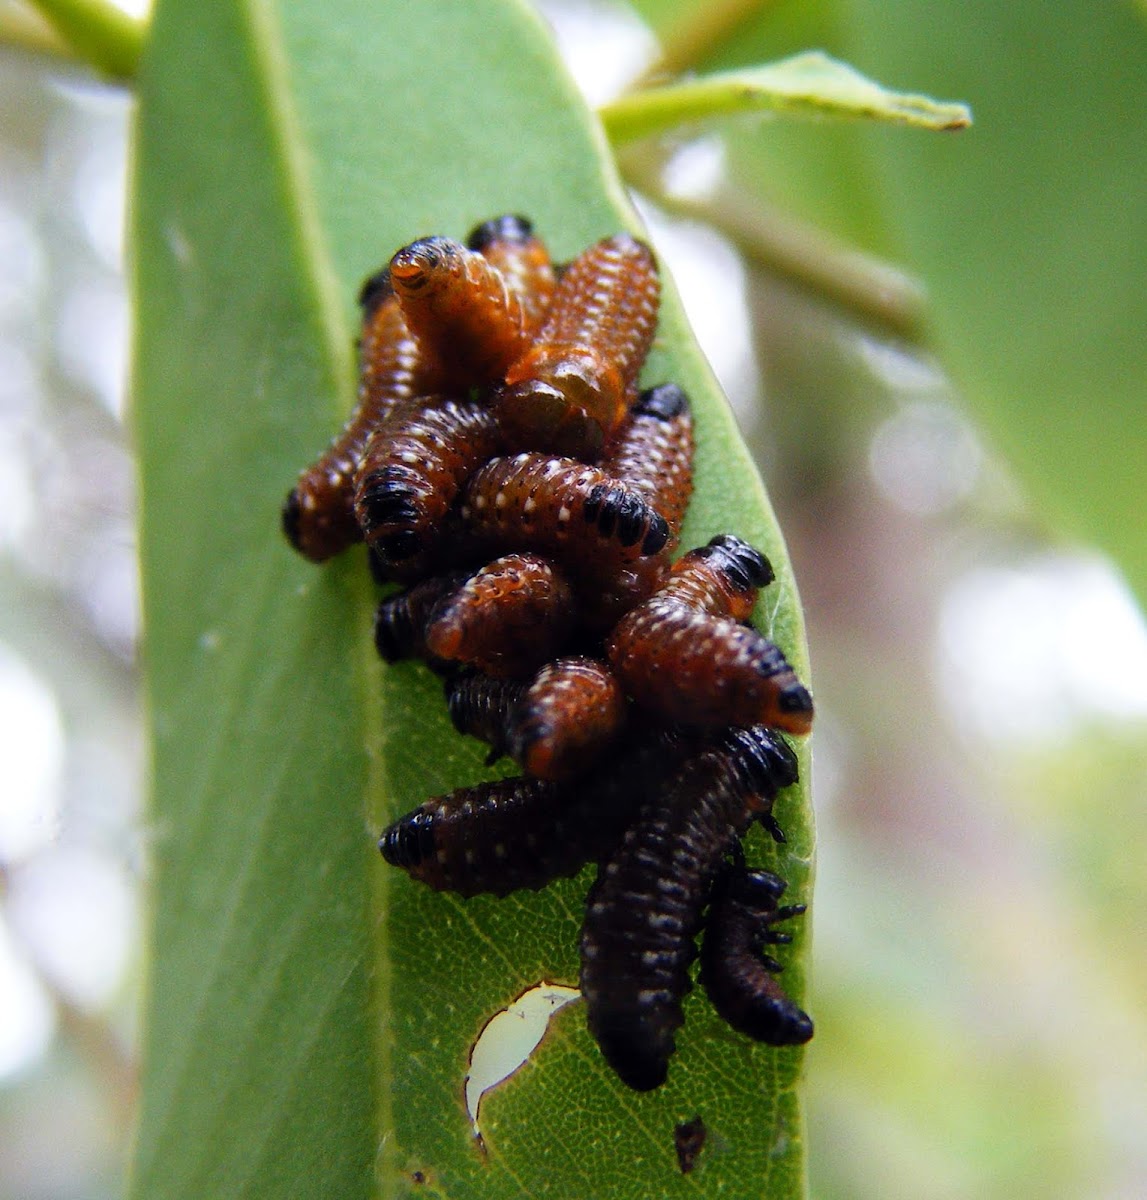 Variole Paropsine Beetle Larva